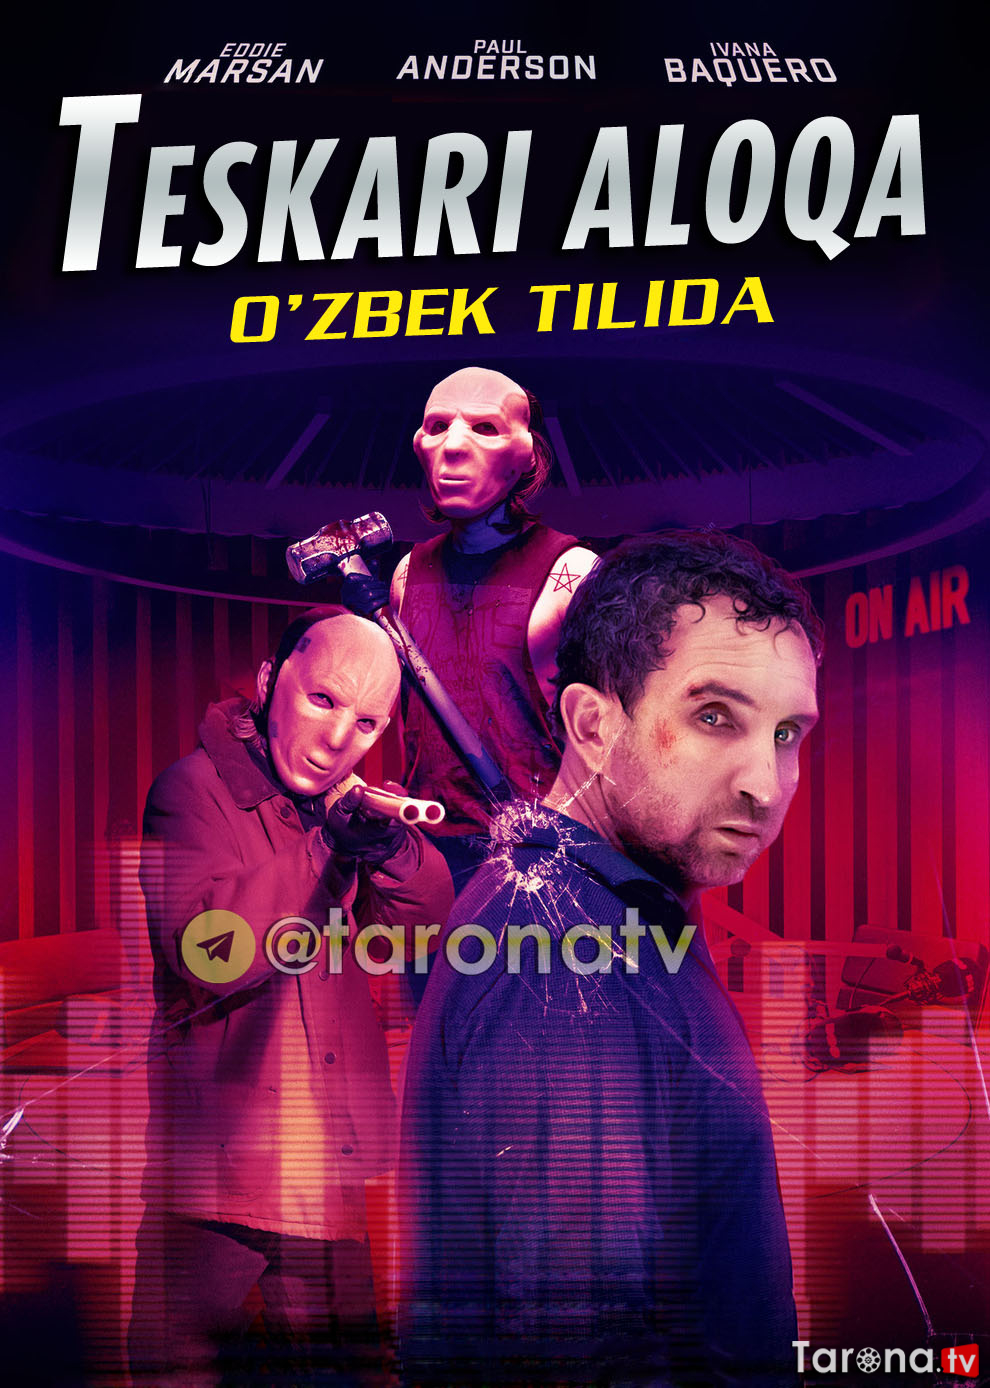 Teskari aloqa (Detektiv, triller, O'zbek tilida) 2020